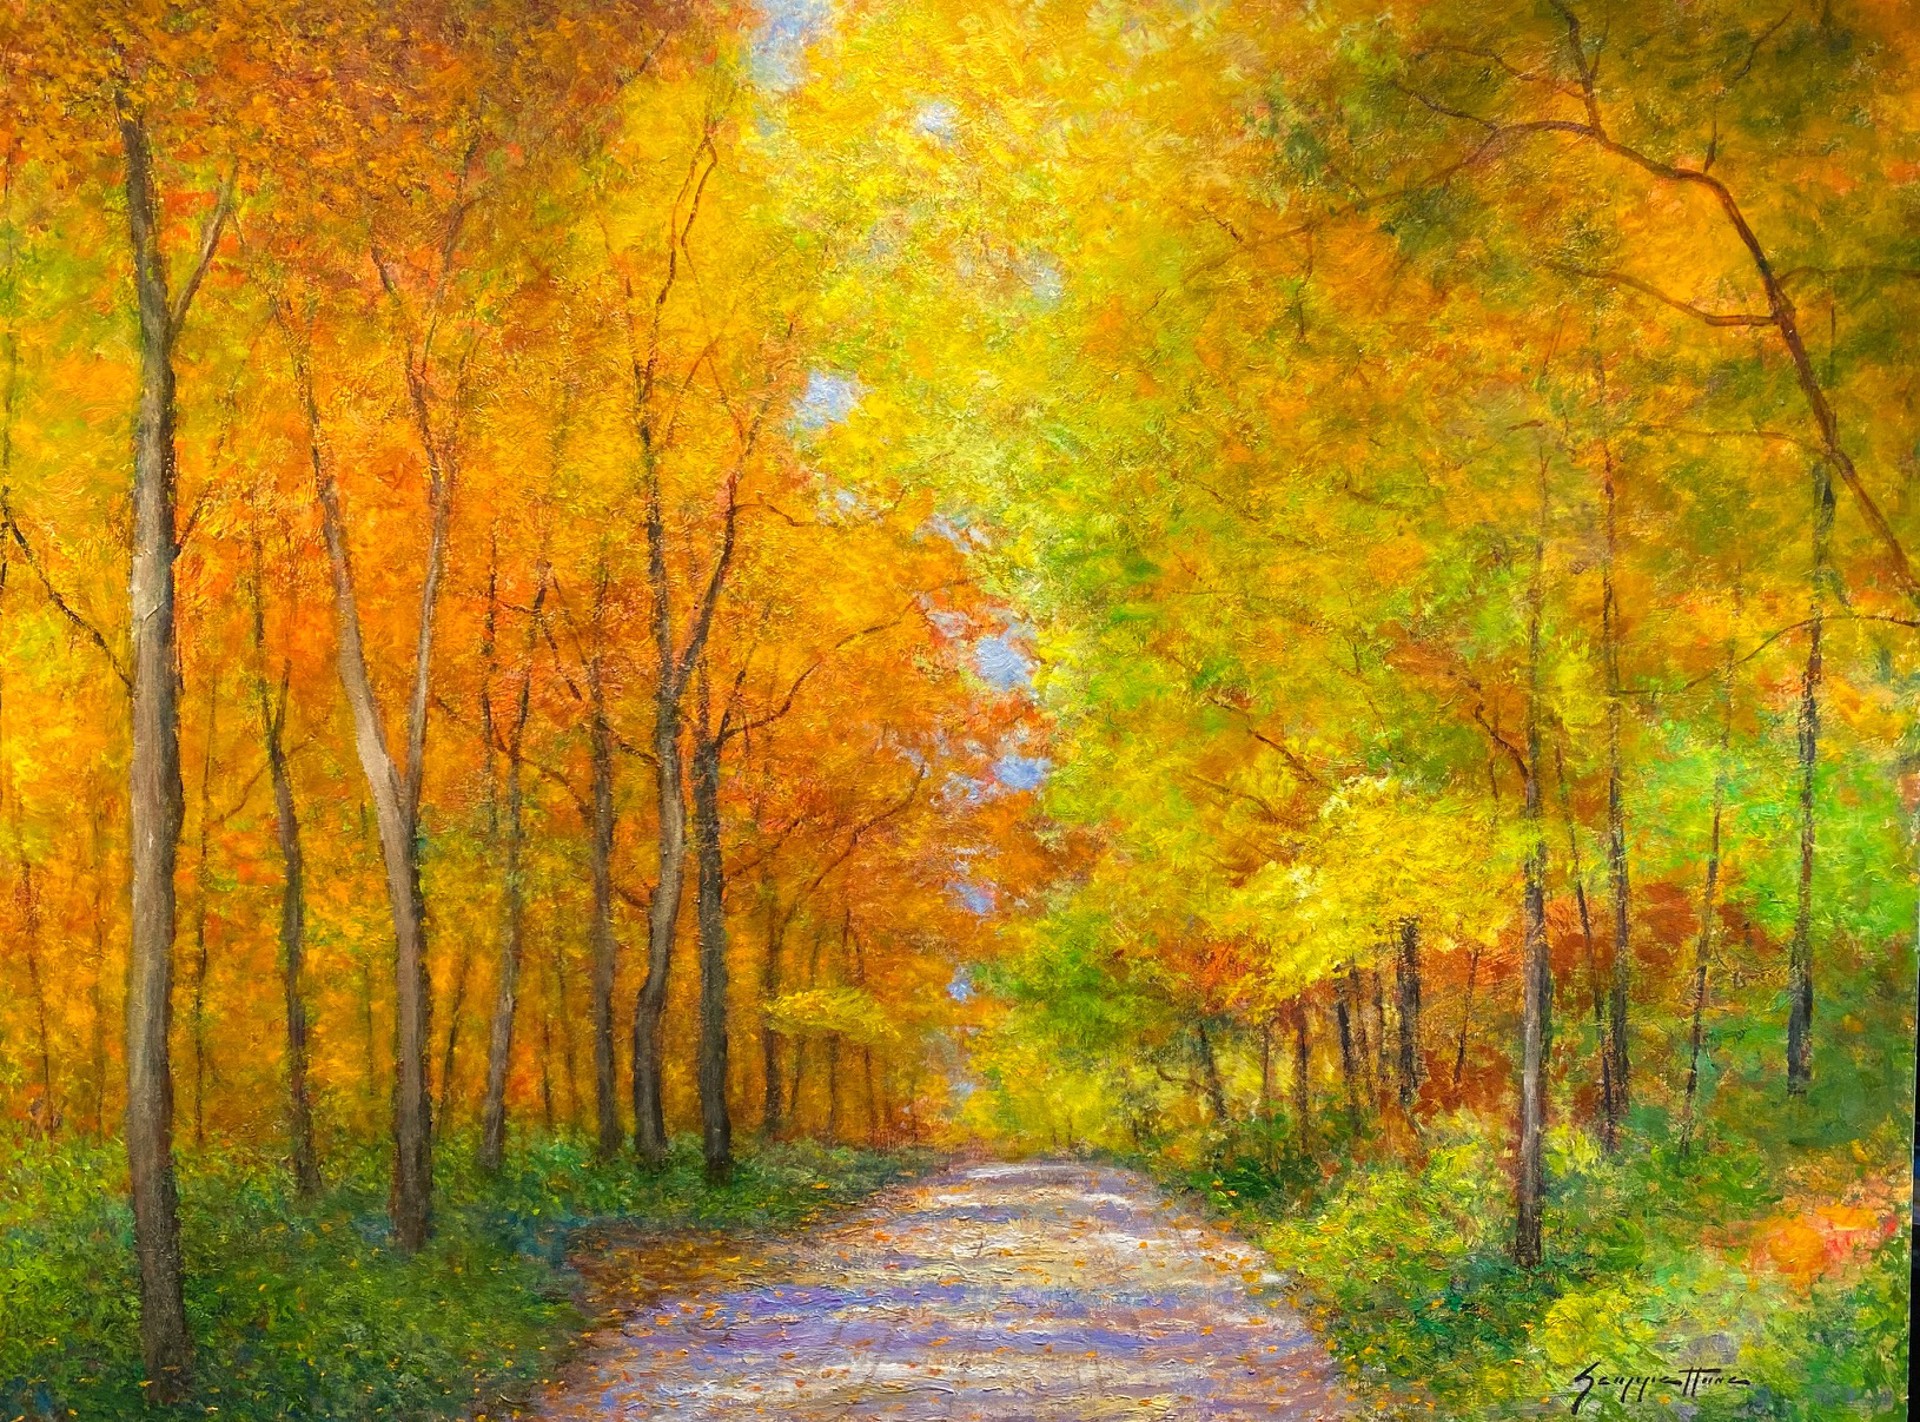 Ready For Autumn (Autumn Lane) by James Scoppettone